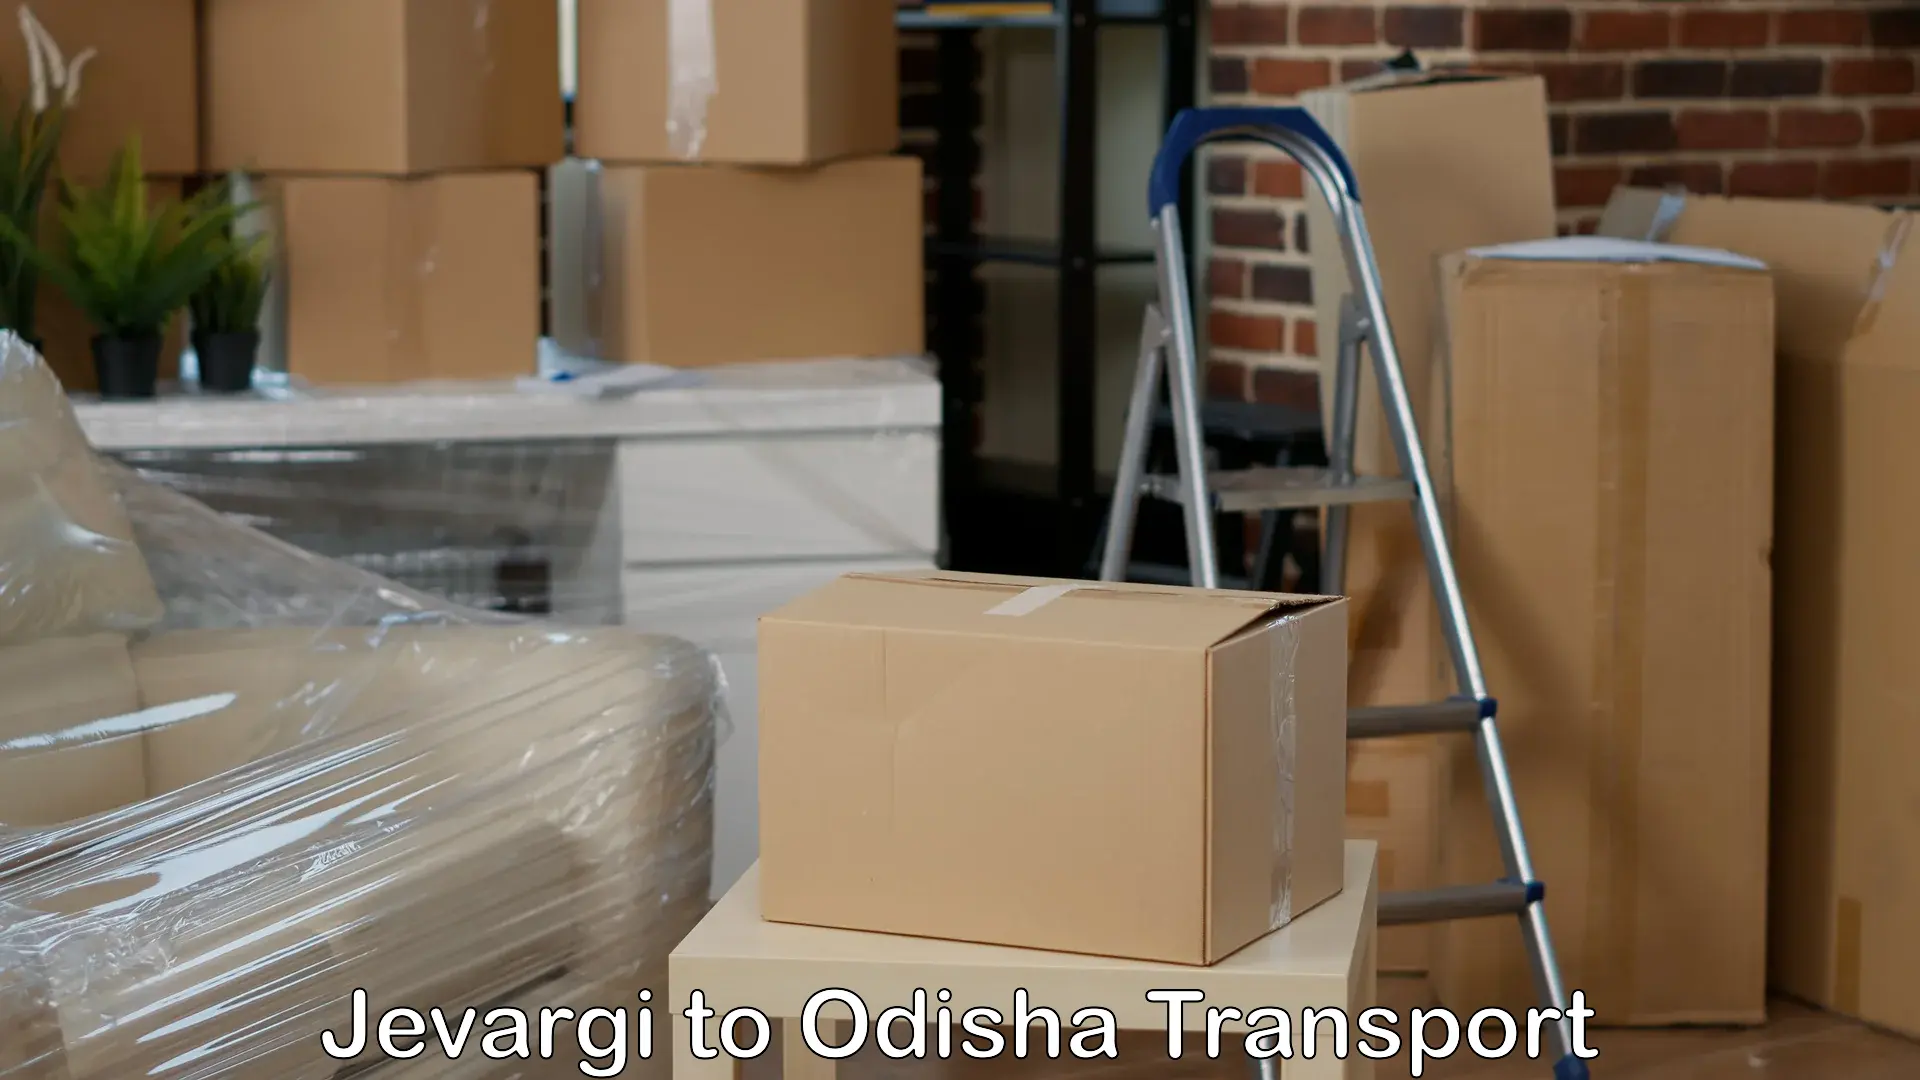 Daily parcel service transport Jevargi to Kupari